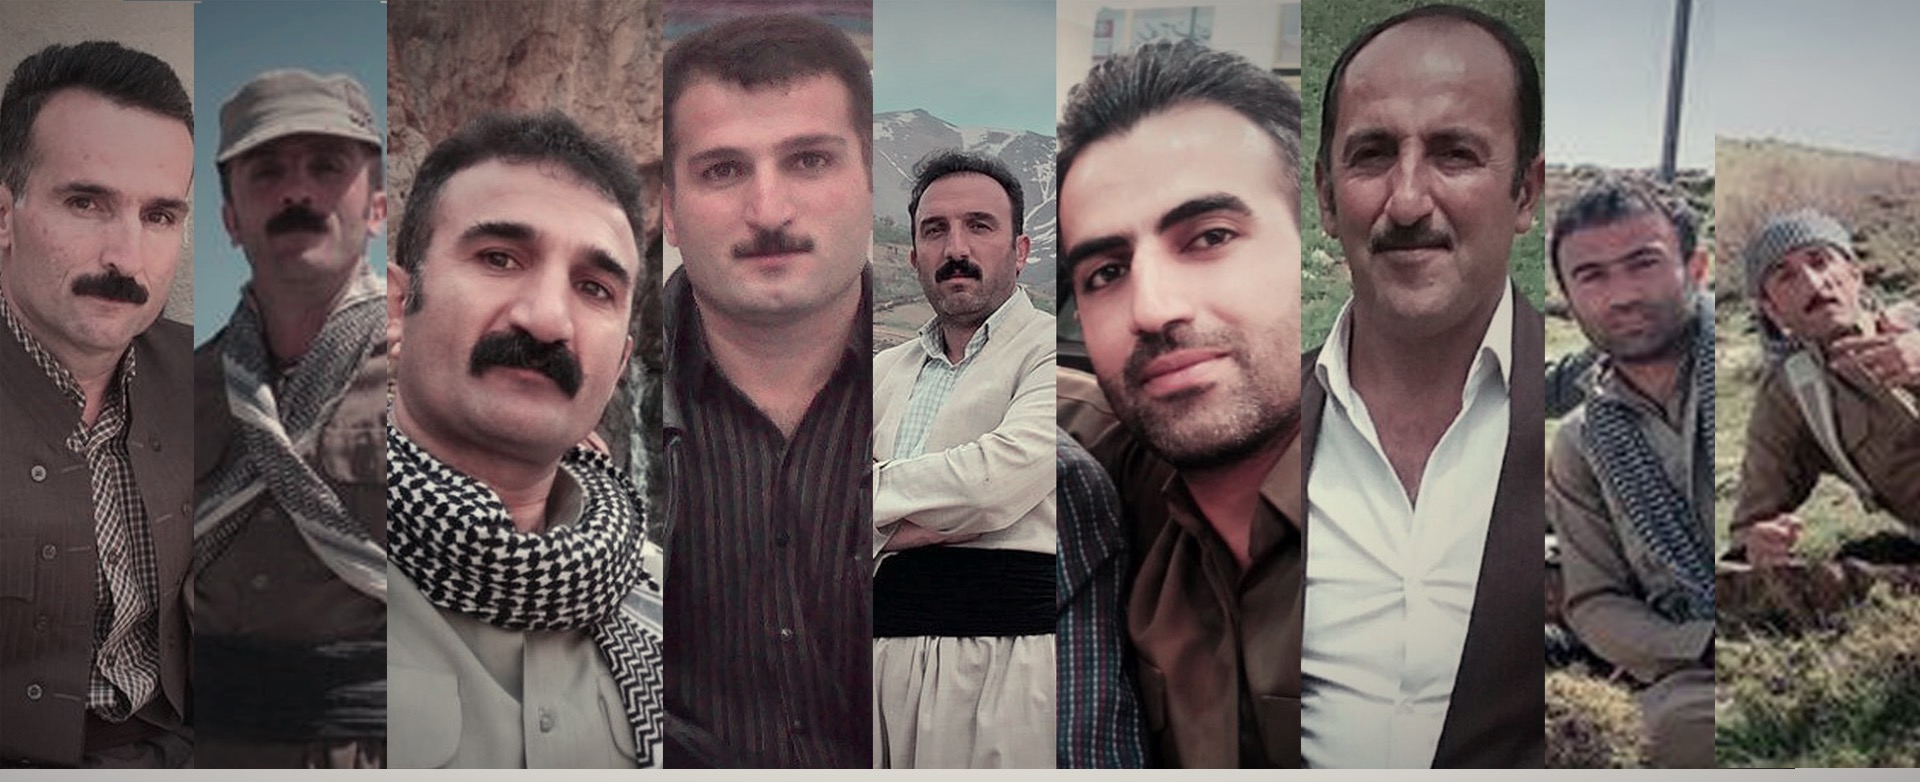 بیانیەی شماری از فعالان مدنی کوردستان ایران نسبت به بازداشت های گستردەی اخیر